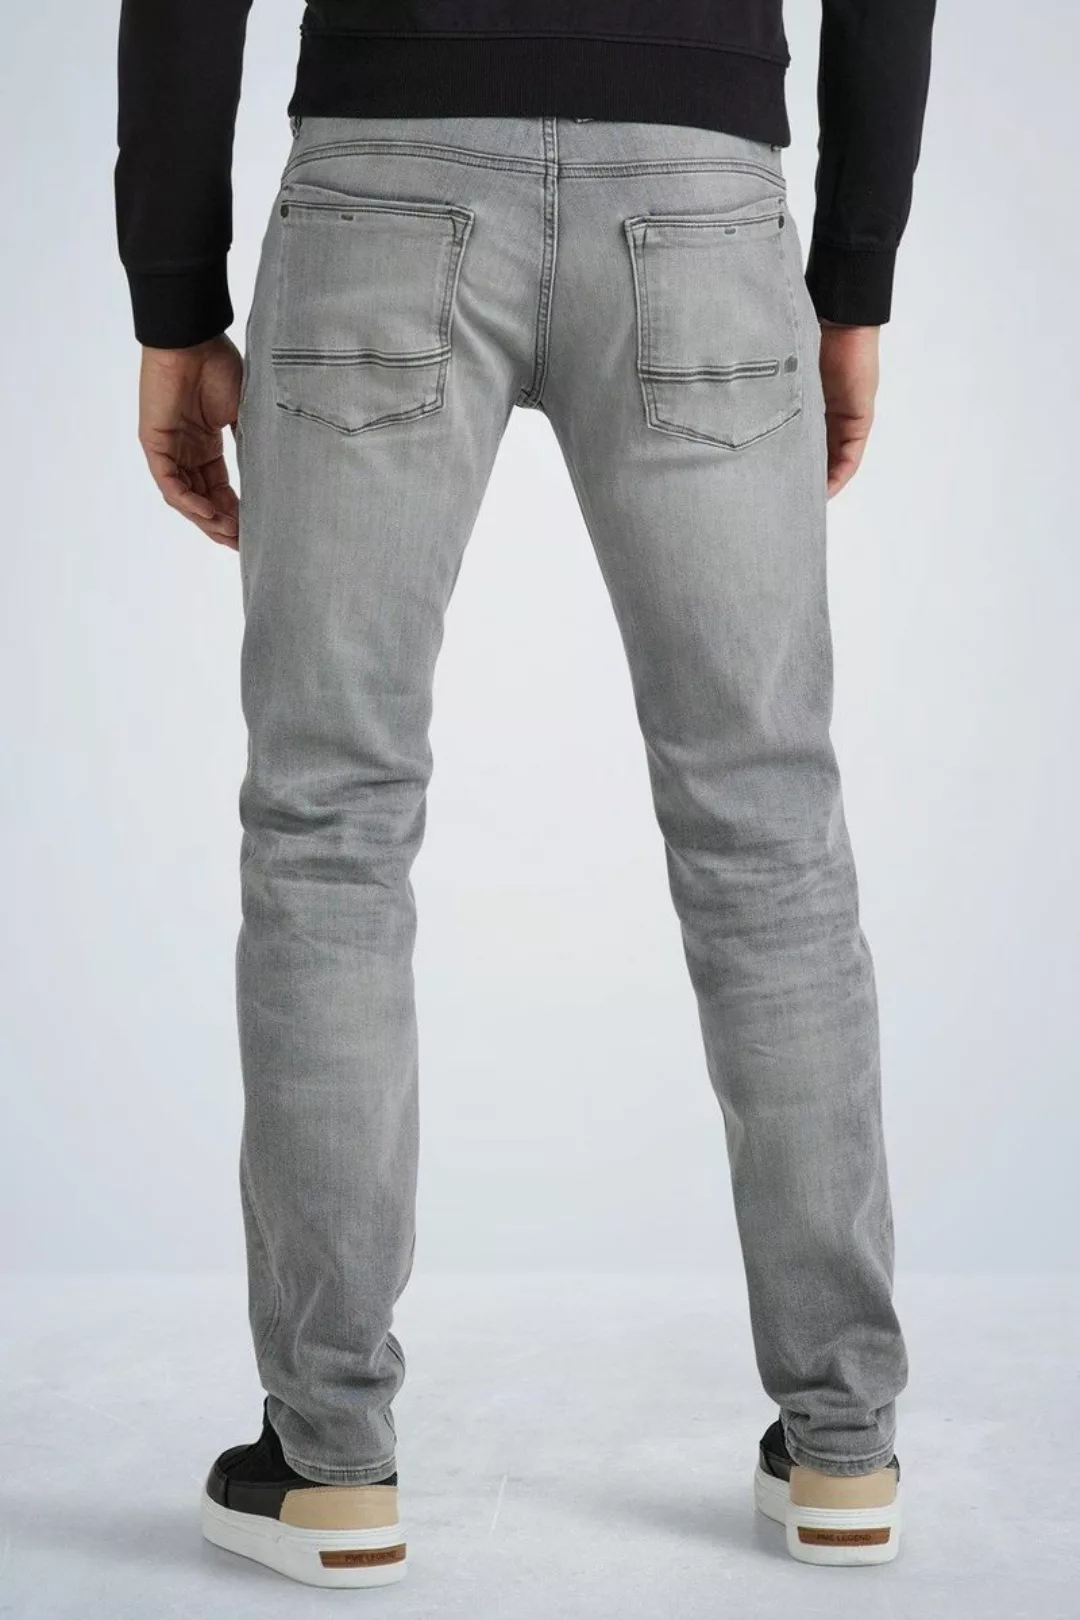 PME Legend Commander 3.0 Jeans Grau - Größe W 33 - L 34 günstig online kaufen